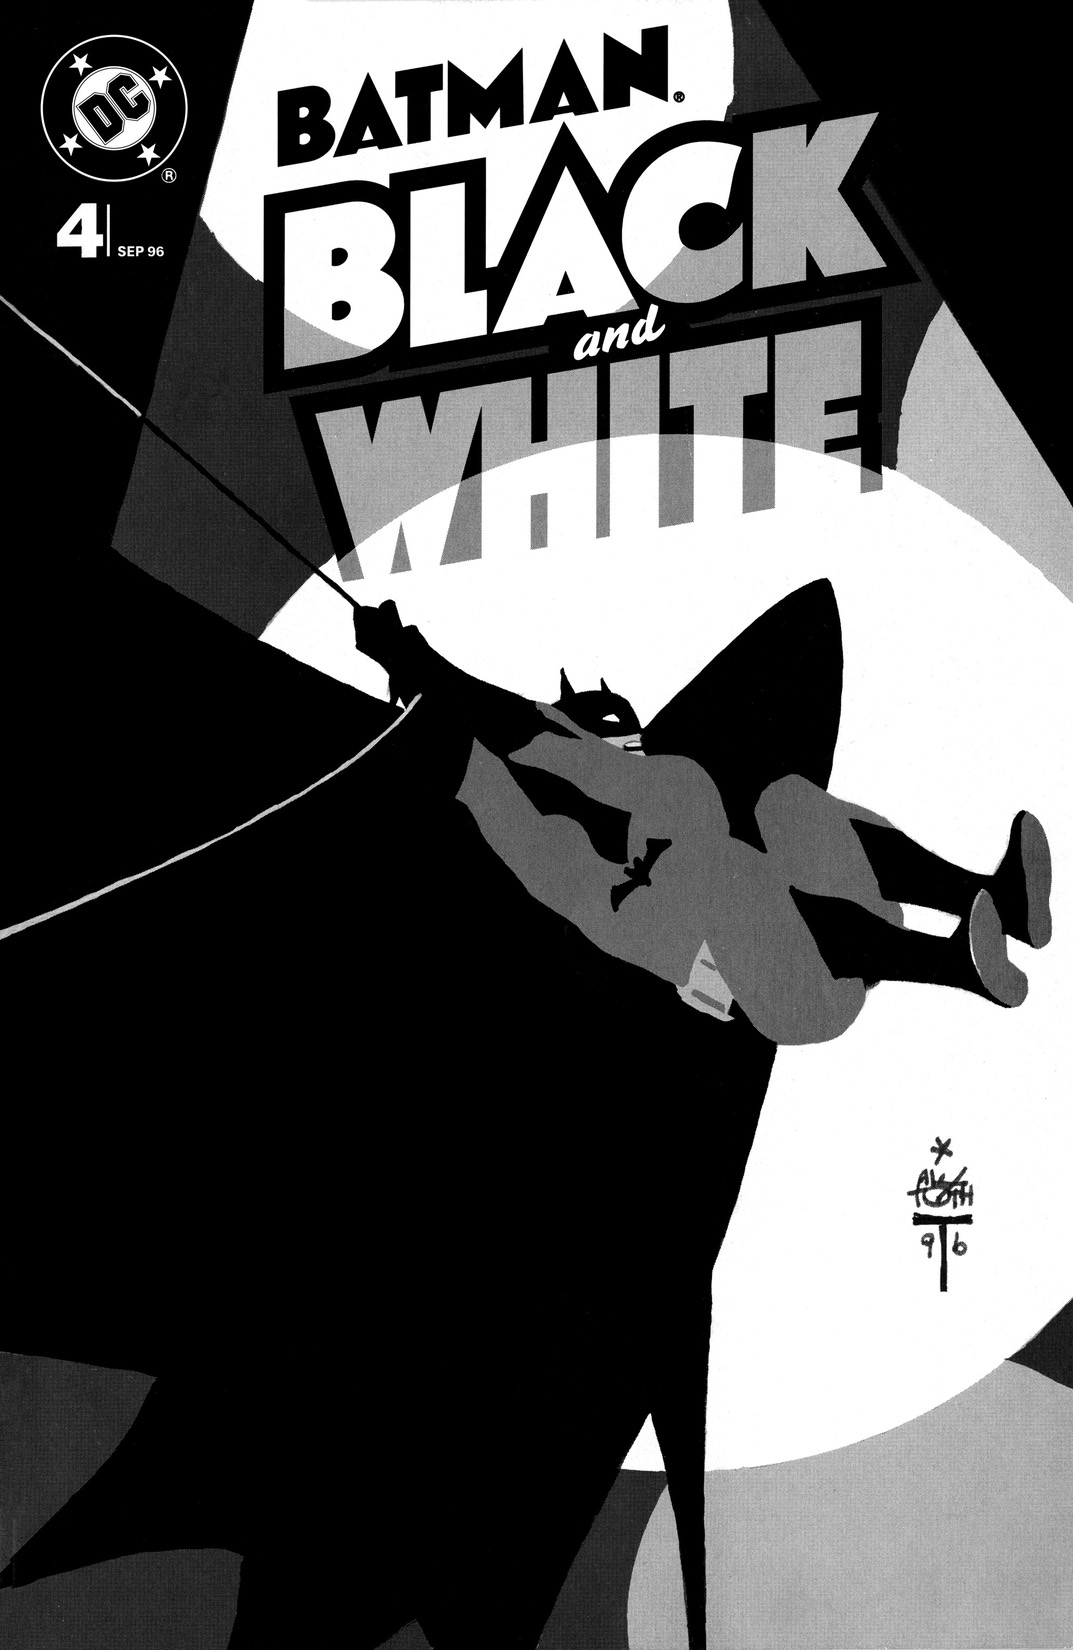 Batman: Black & White (1996-) #4 preview images